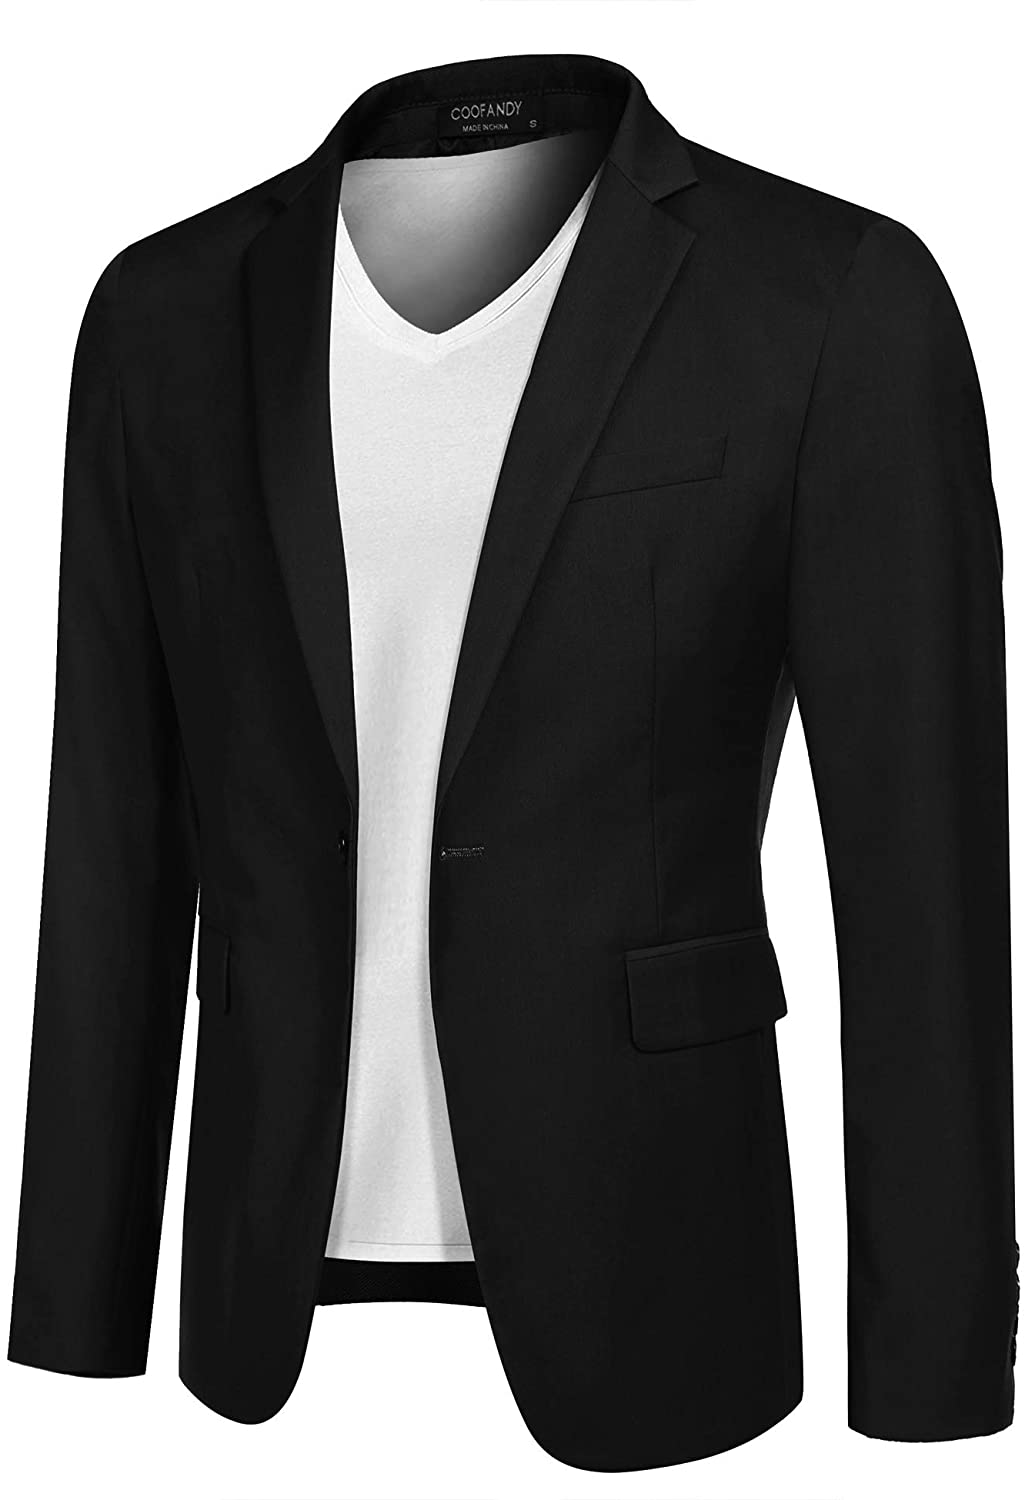  Men's Sport Coats & Blazers - Black / Men's Sport Coats &  Blazers / Men's Suits : Clothing, Shoes & Jewelry